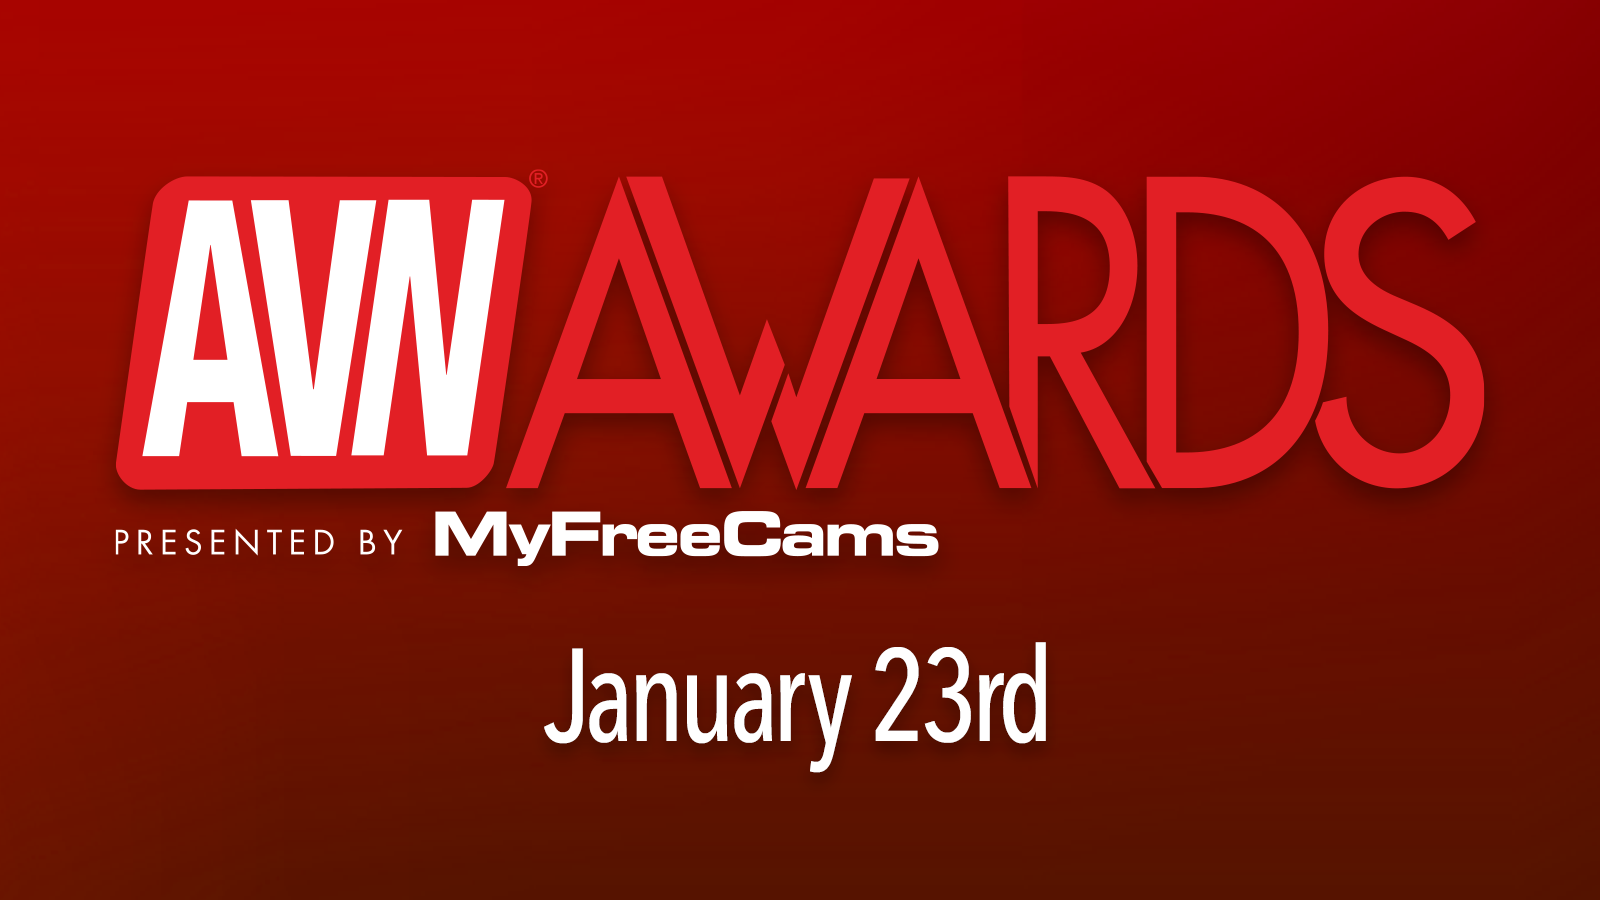 Last Call: 2021 AVN Awards Pre-Nom Deadline This Wednesday